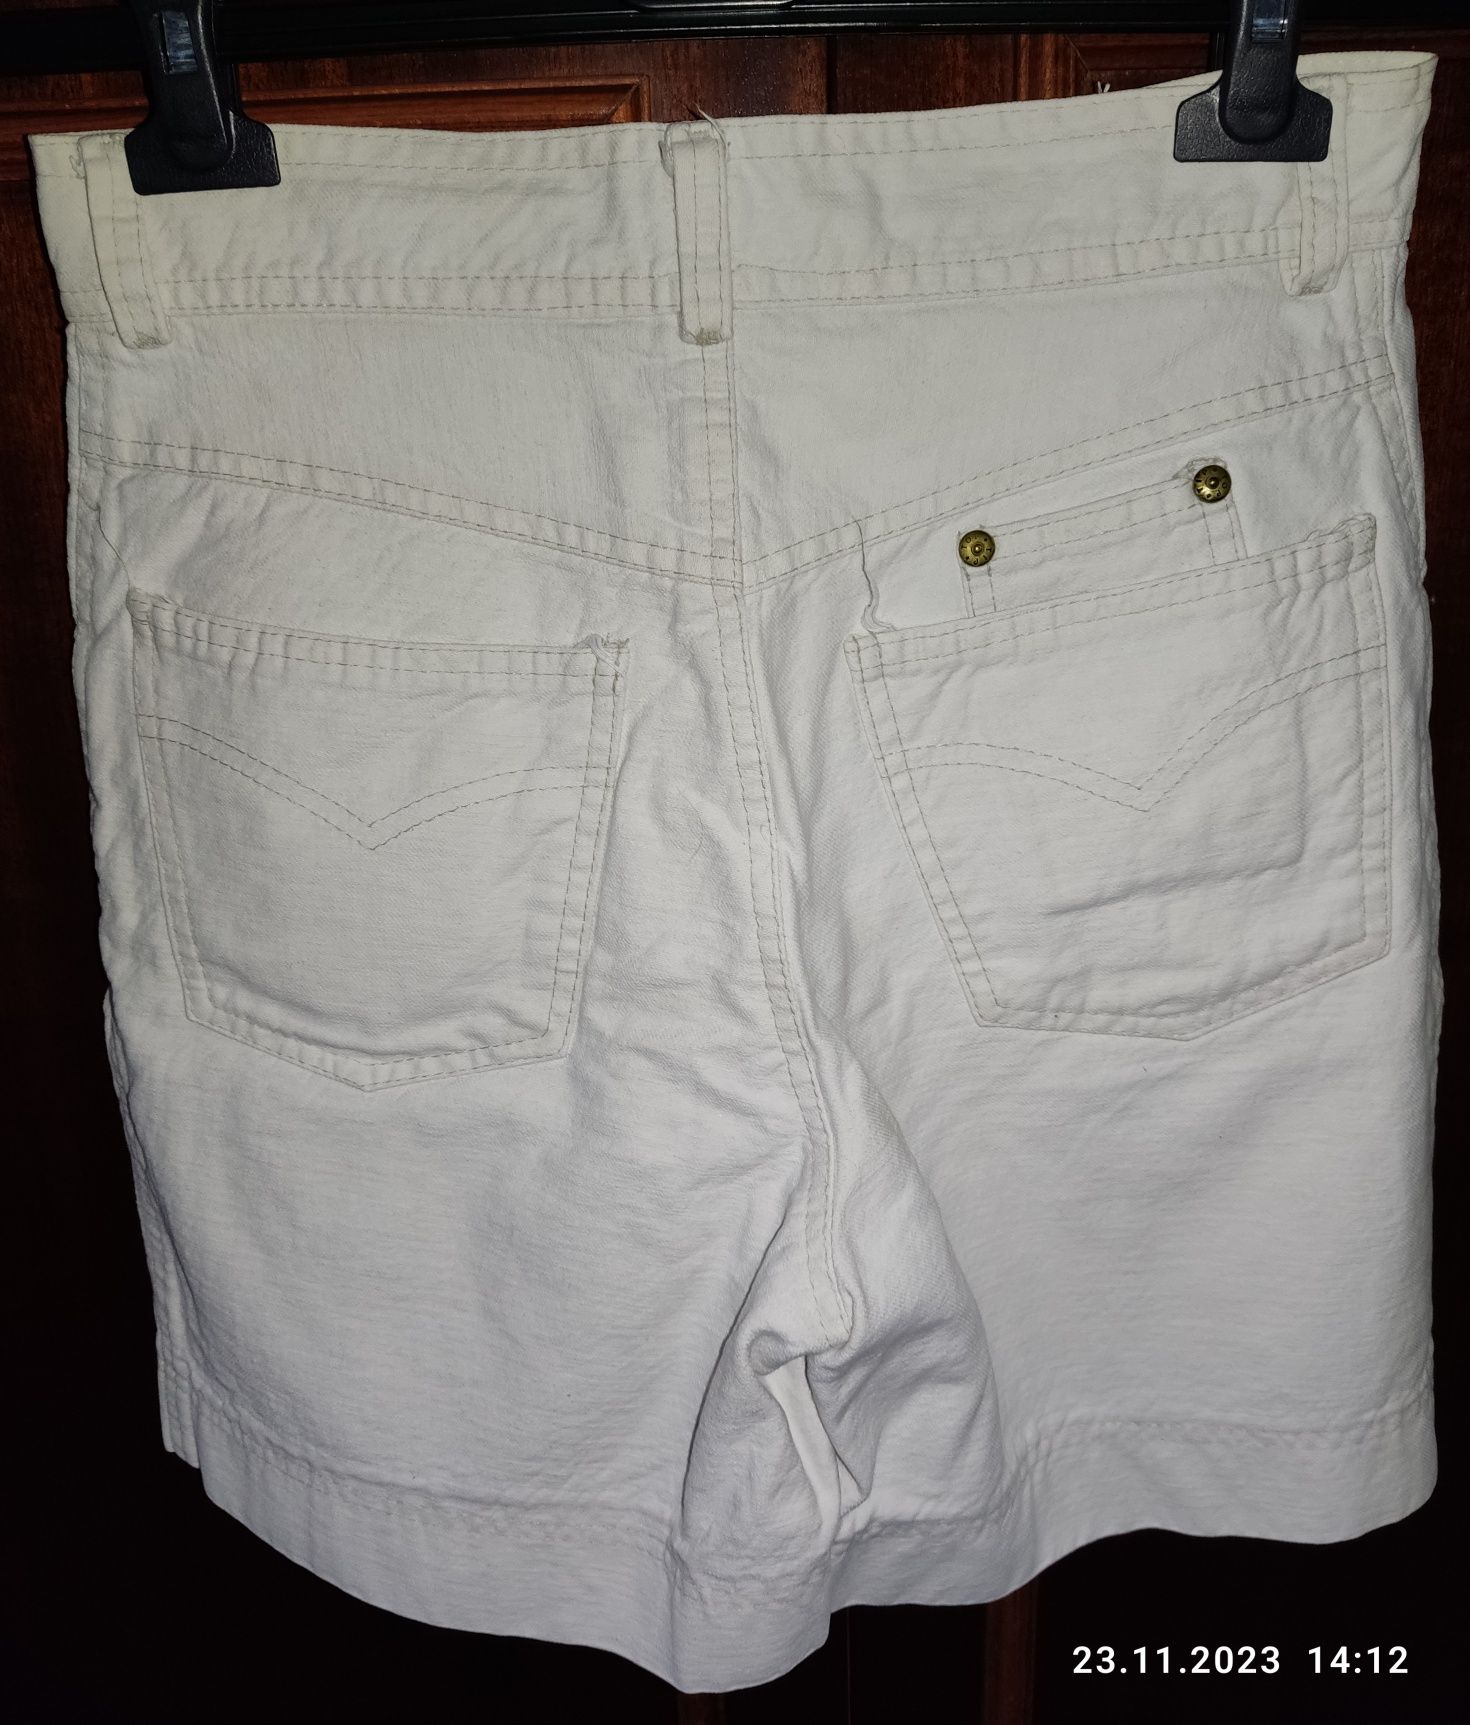 Spodnie damskie krótkie kremowe, używane.